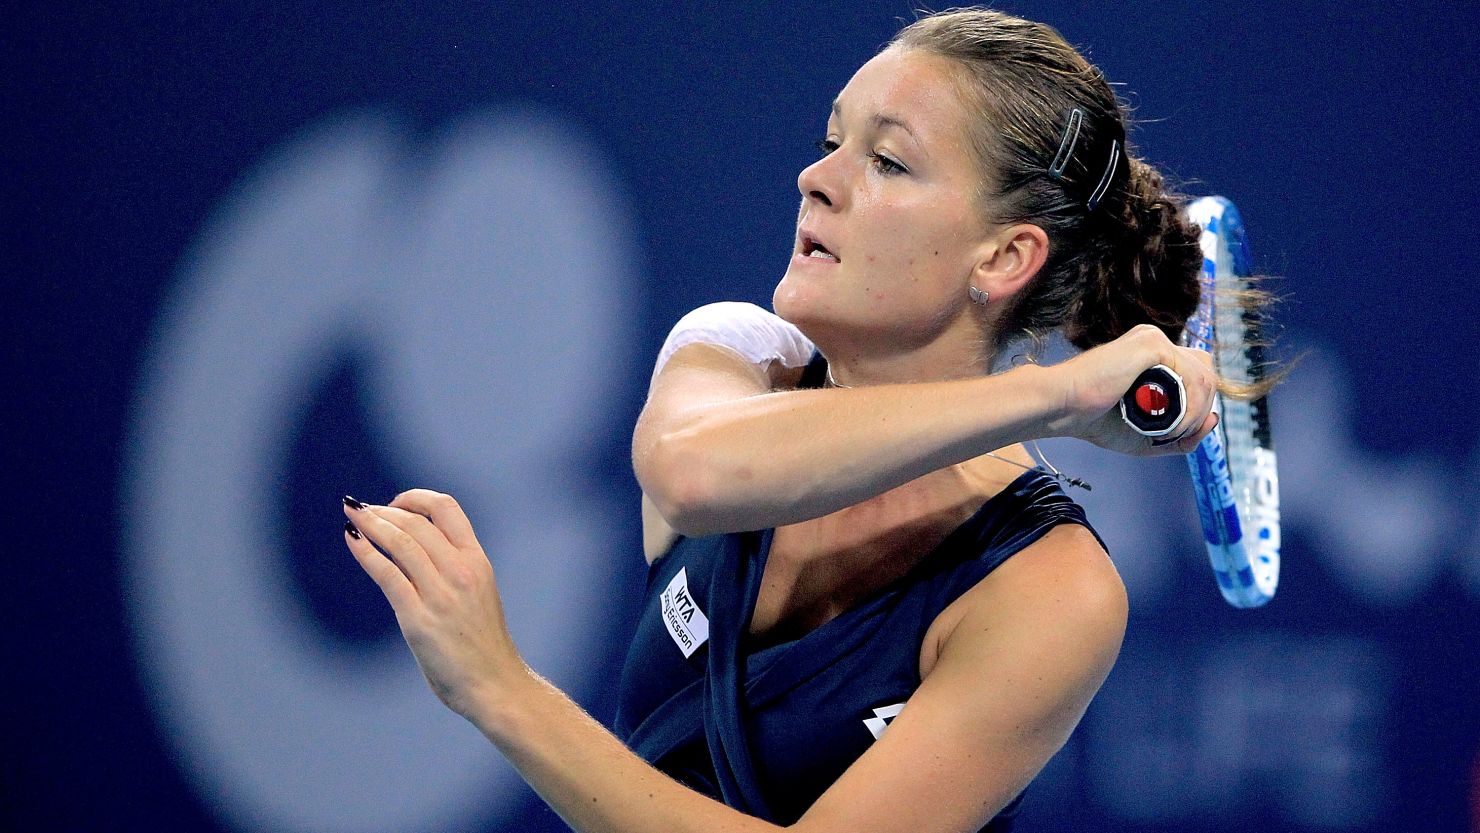 Agnieszka Radwanska lost to Lucie Safarova as she bid to seal a WTA Championships berth 